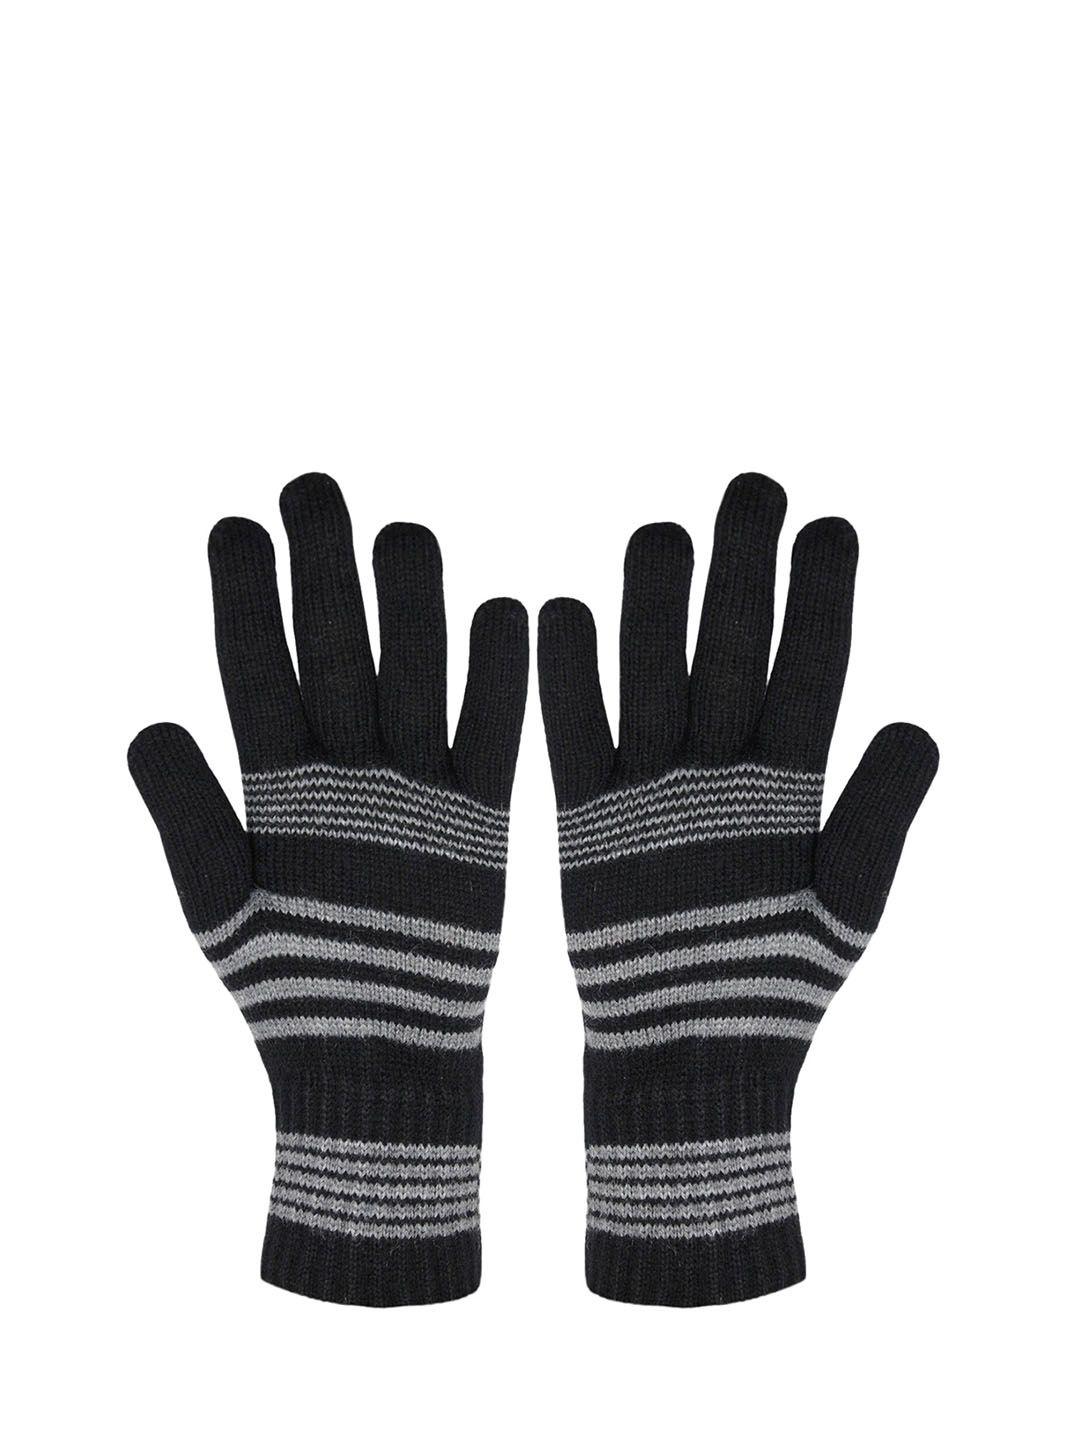 baesd men striped full finger woolen winter gloves